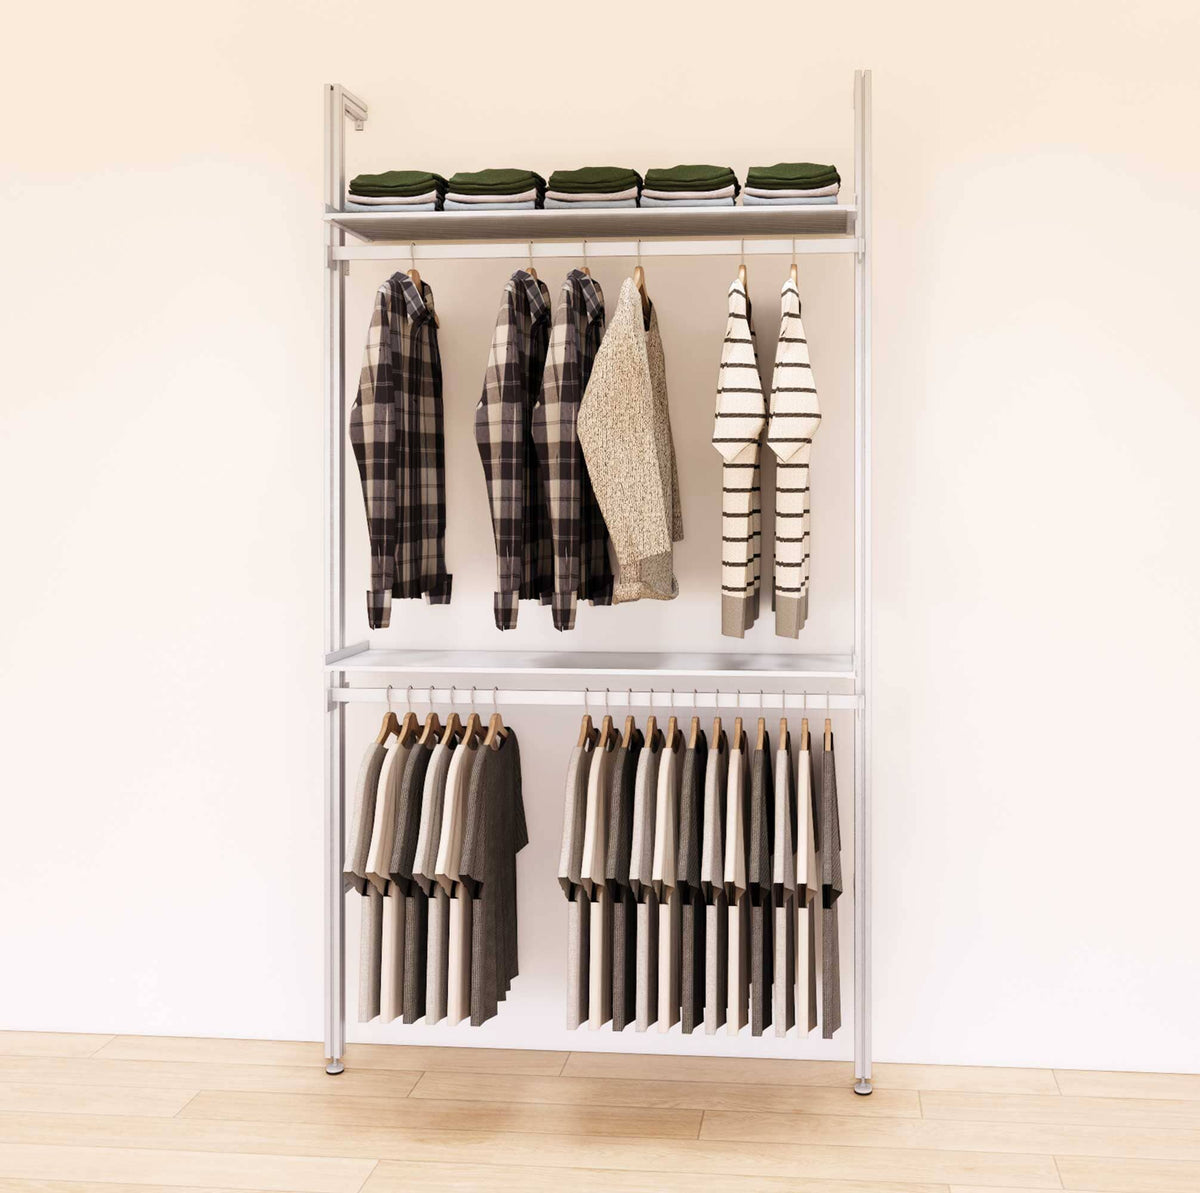 Retail Display Shelving with 2 Shelves + 2 Hanger Bars – Modern Shelving